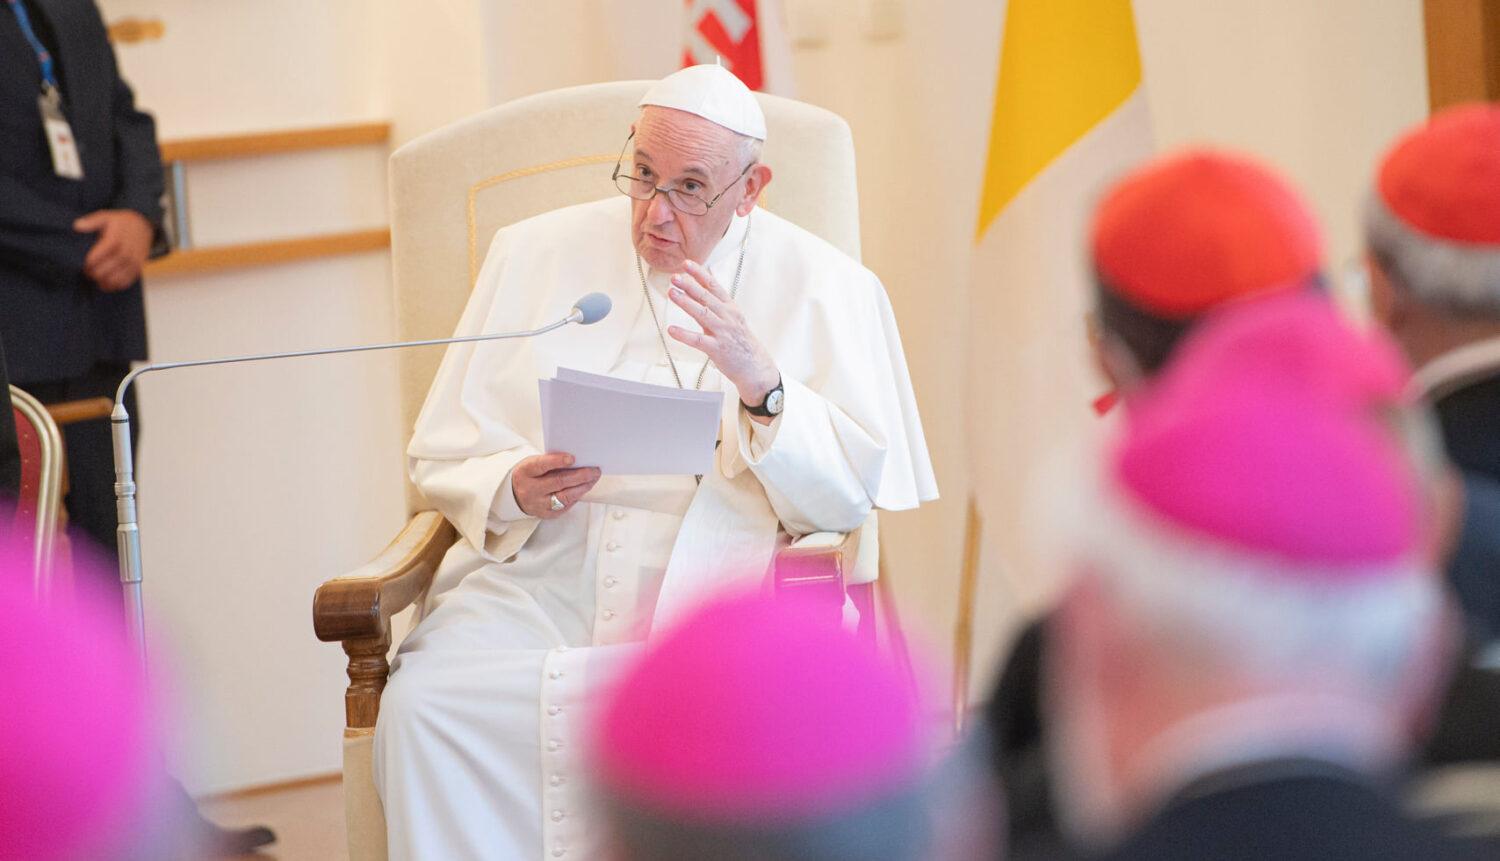 Boli priamo na mieste: Súkromné stretnutie pápeža s jezuitmi